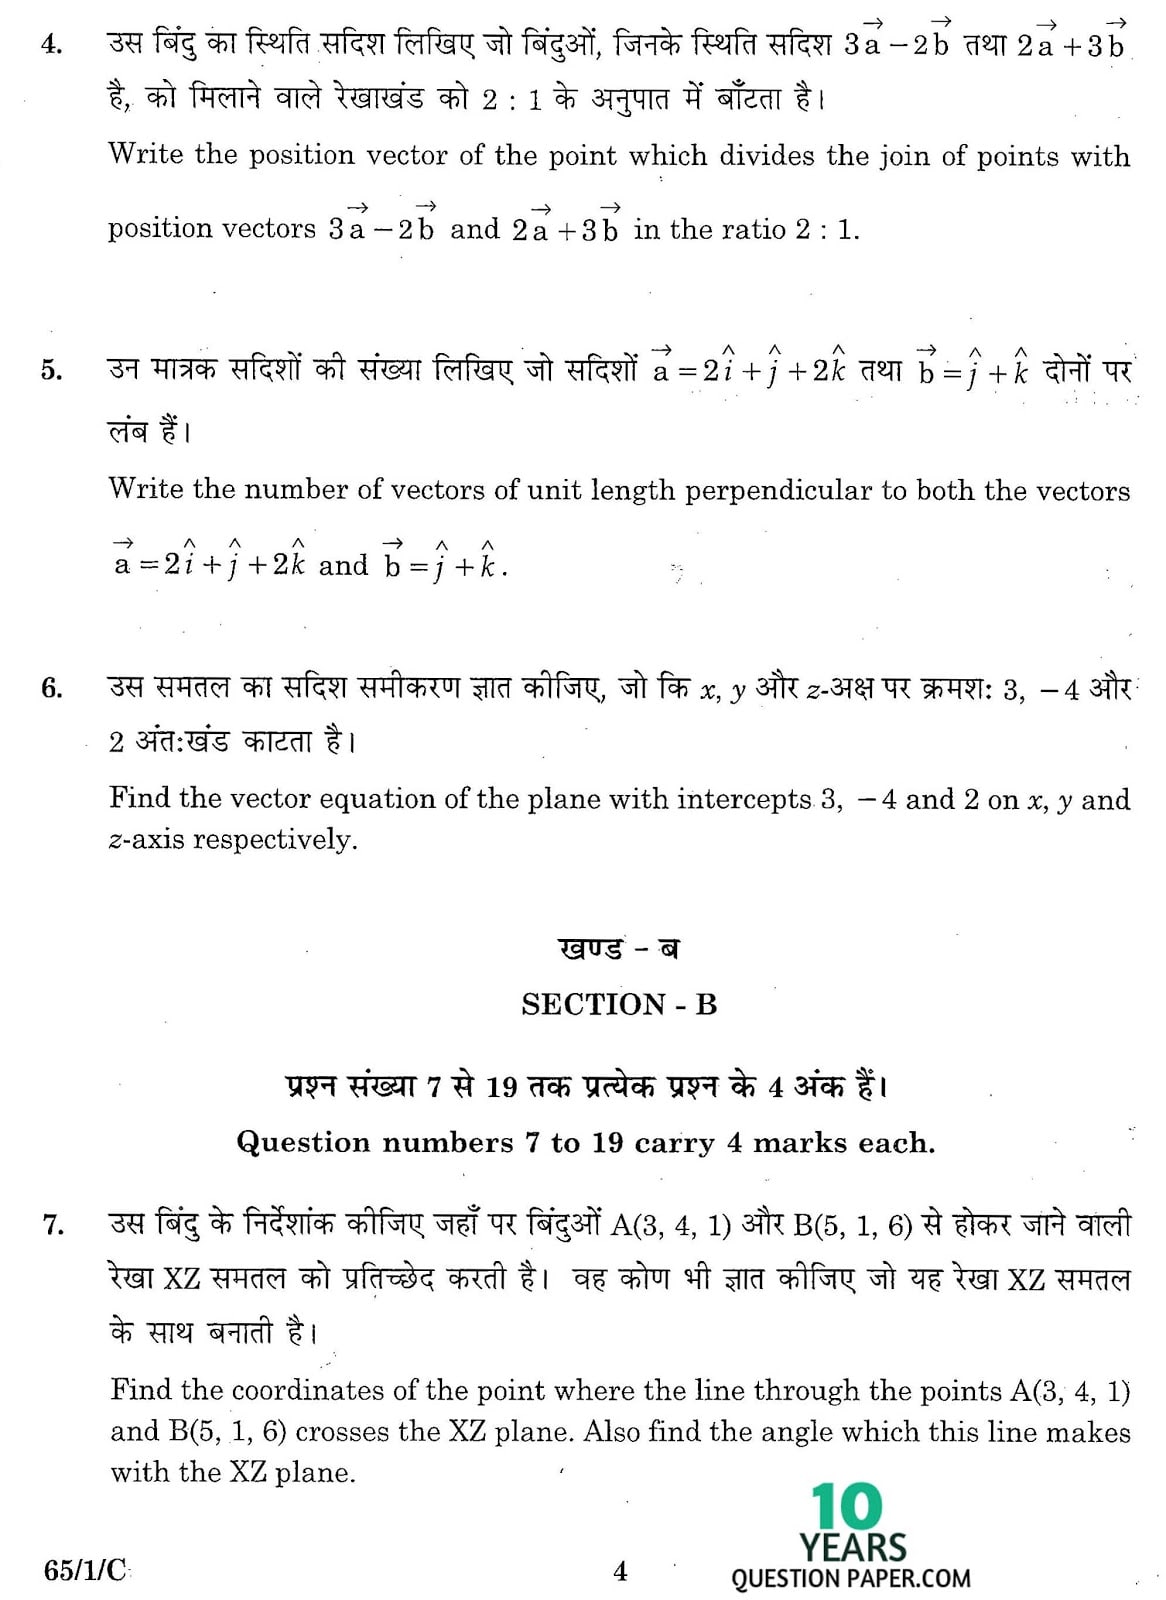 CBSE Class 12 Mathematics 2016 SET-1 Question Paper